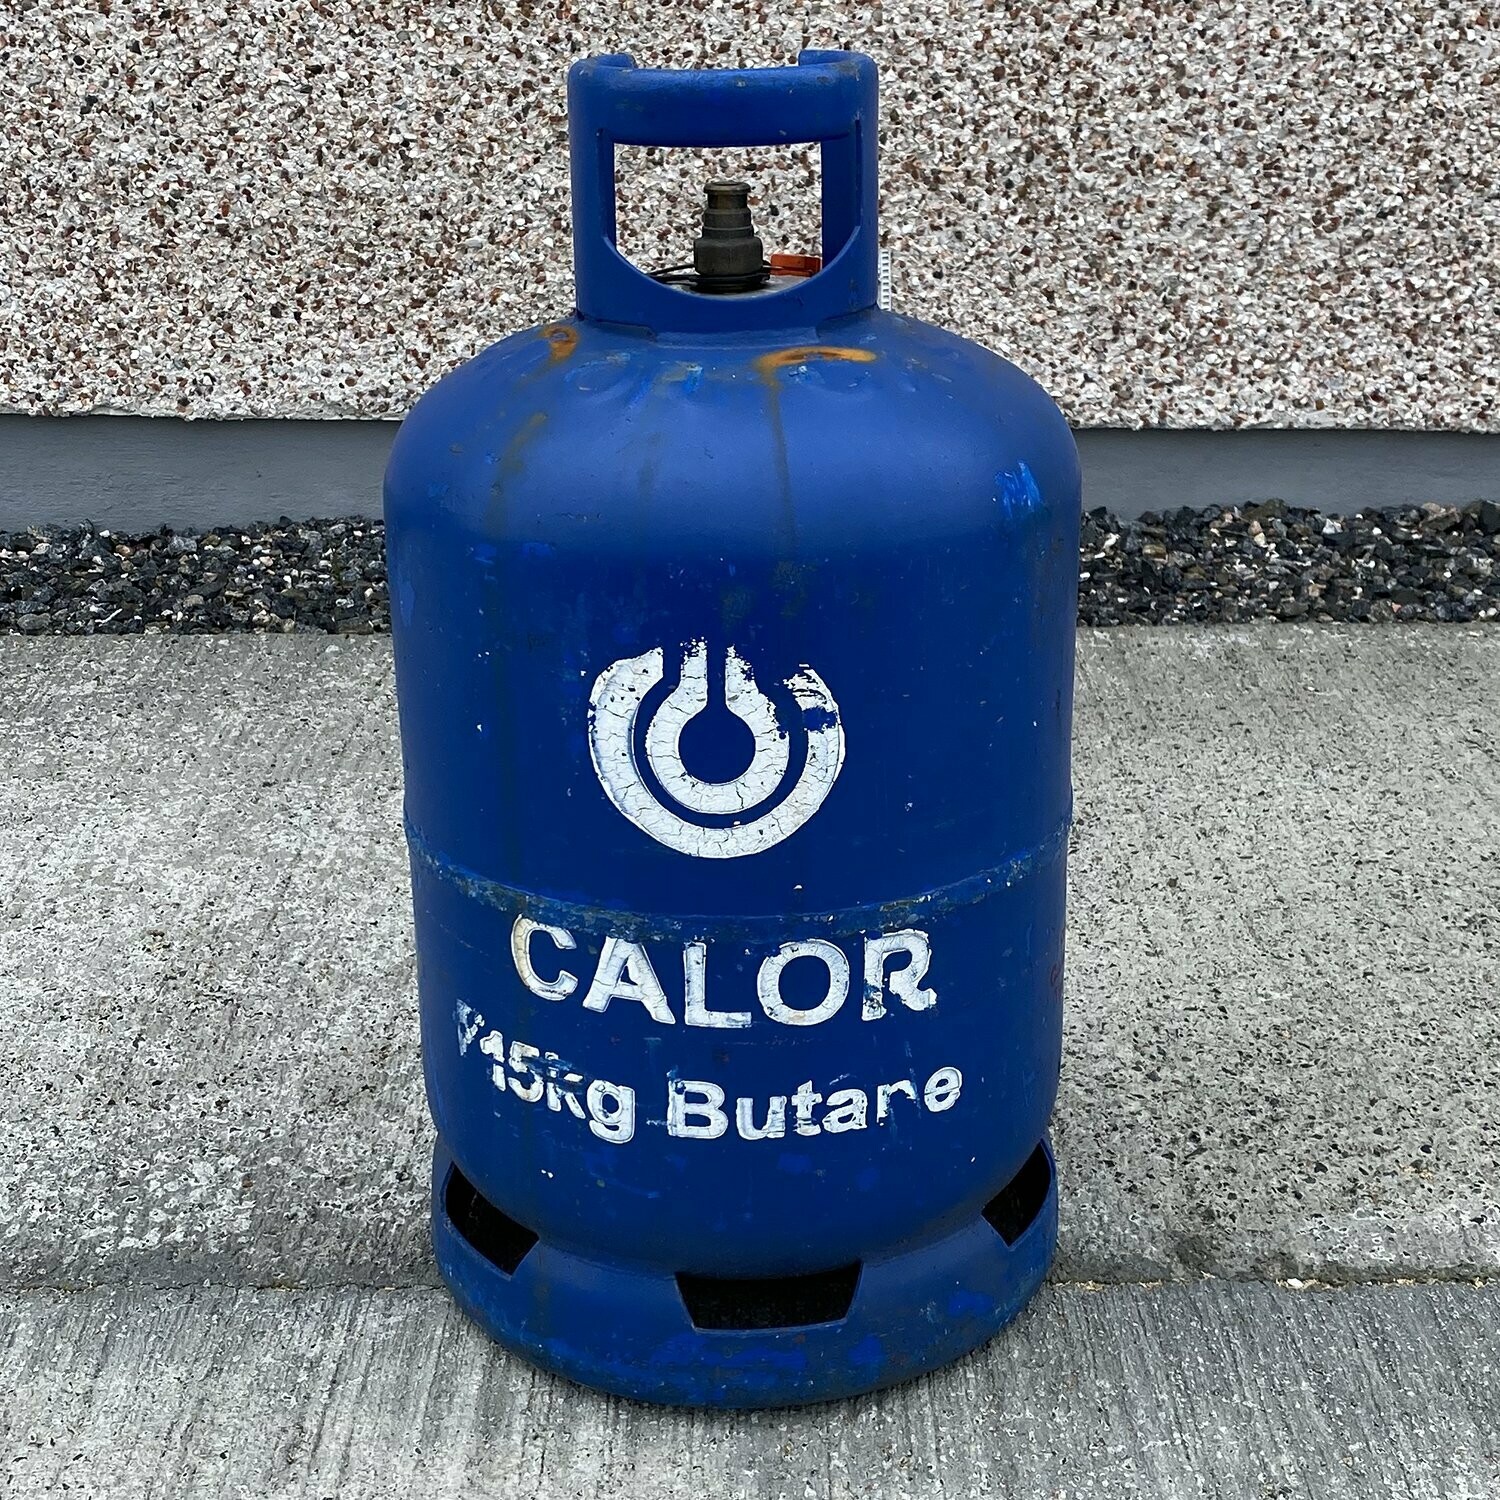 CALOR 15kg Butane blue gas cylinder